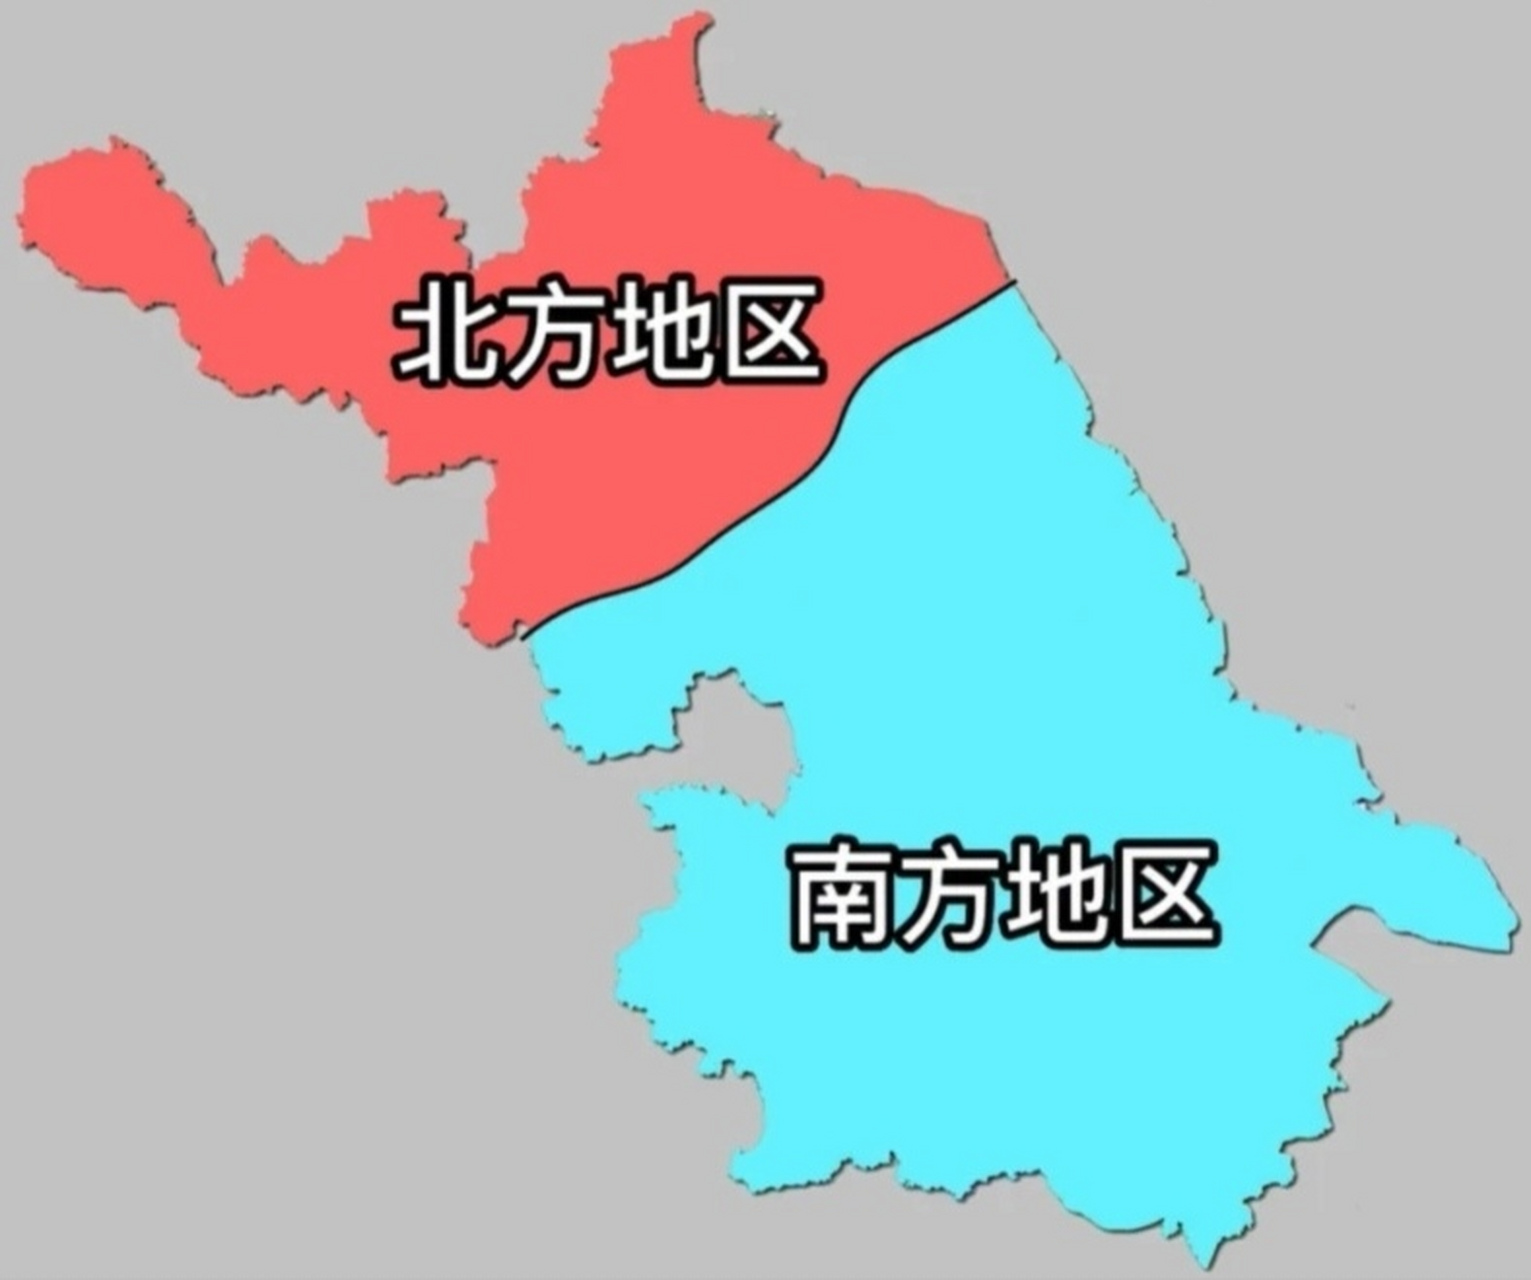 南北分界线是淮河,江苏大部分城市位于淮河以南,只有徐州,连云港,宿迁